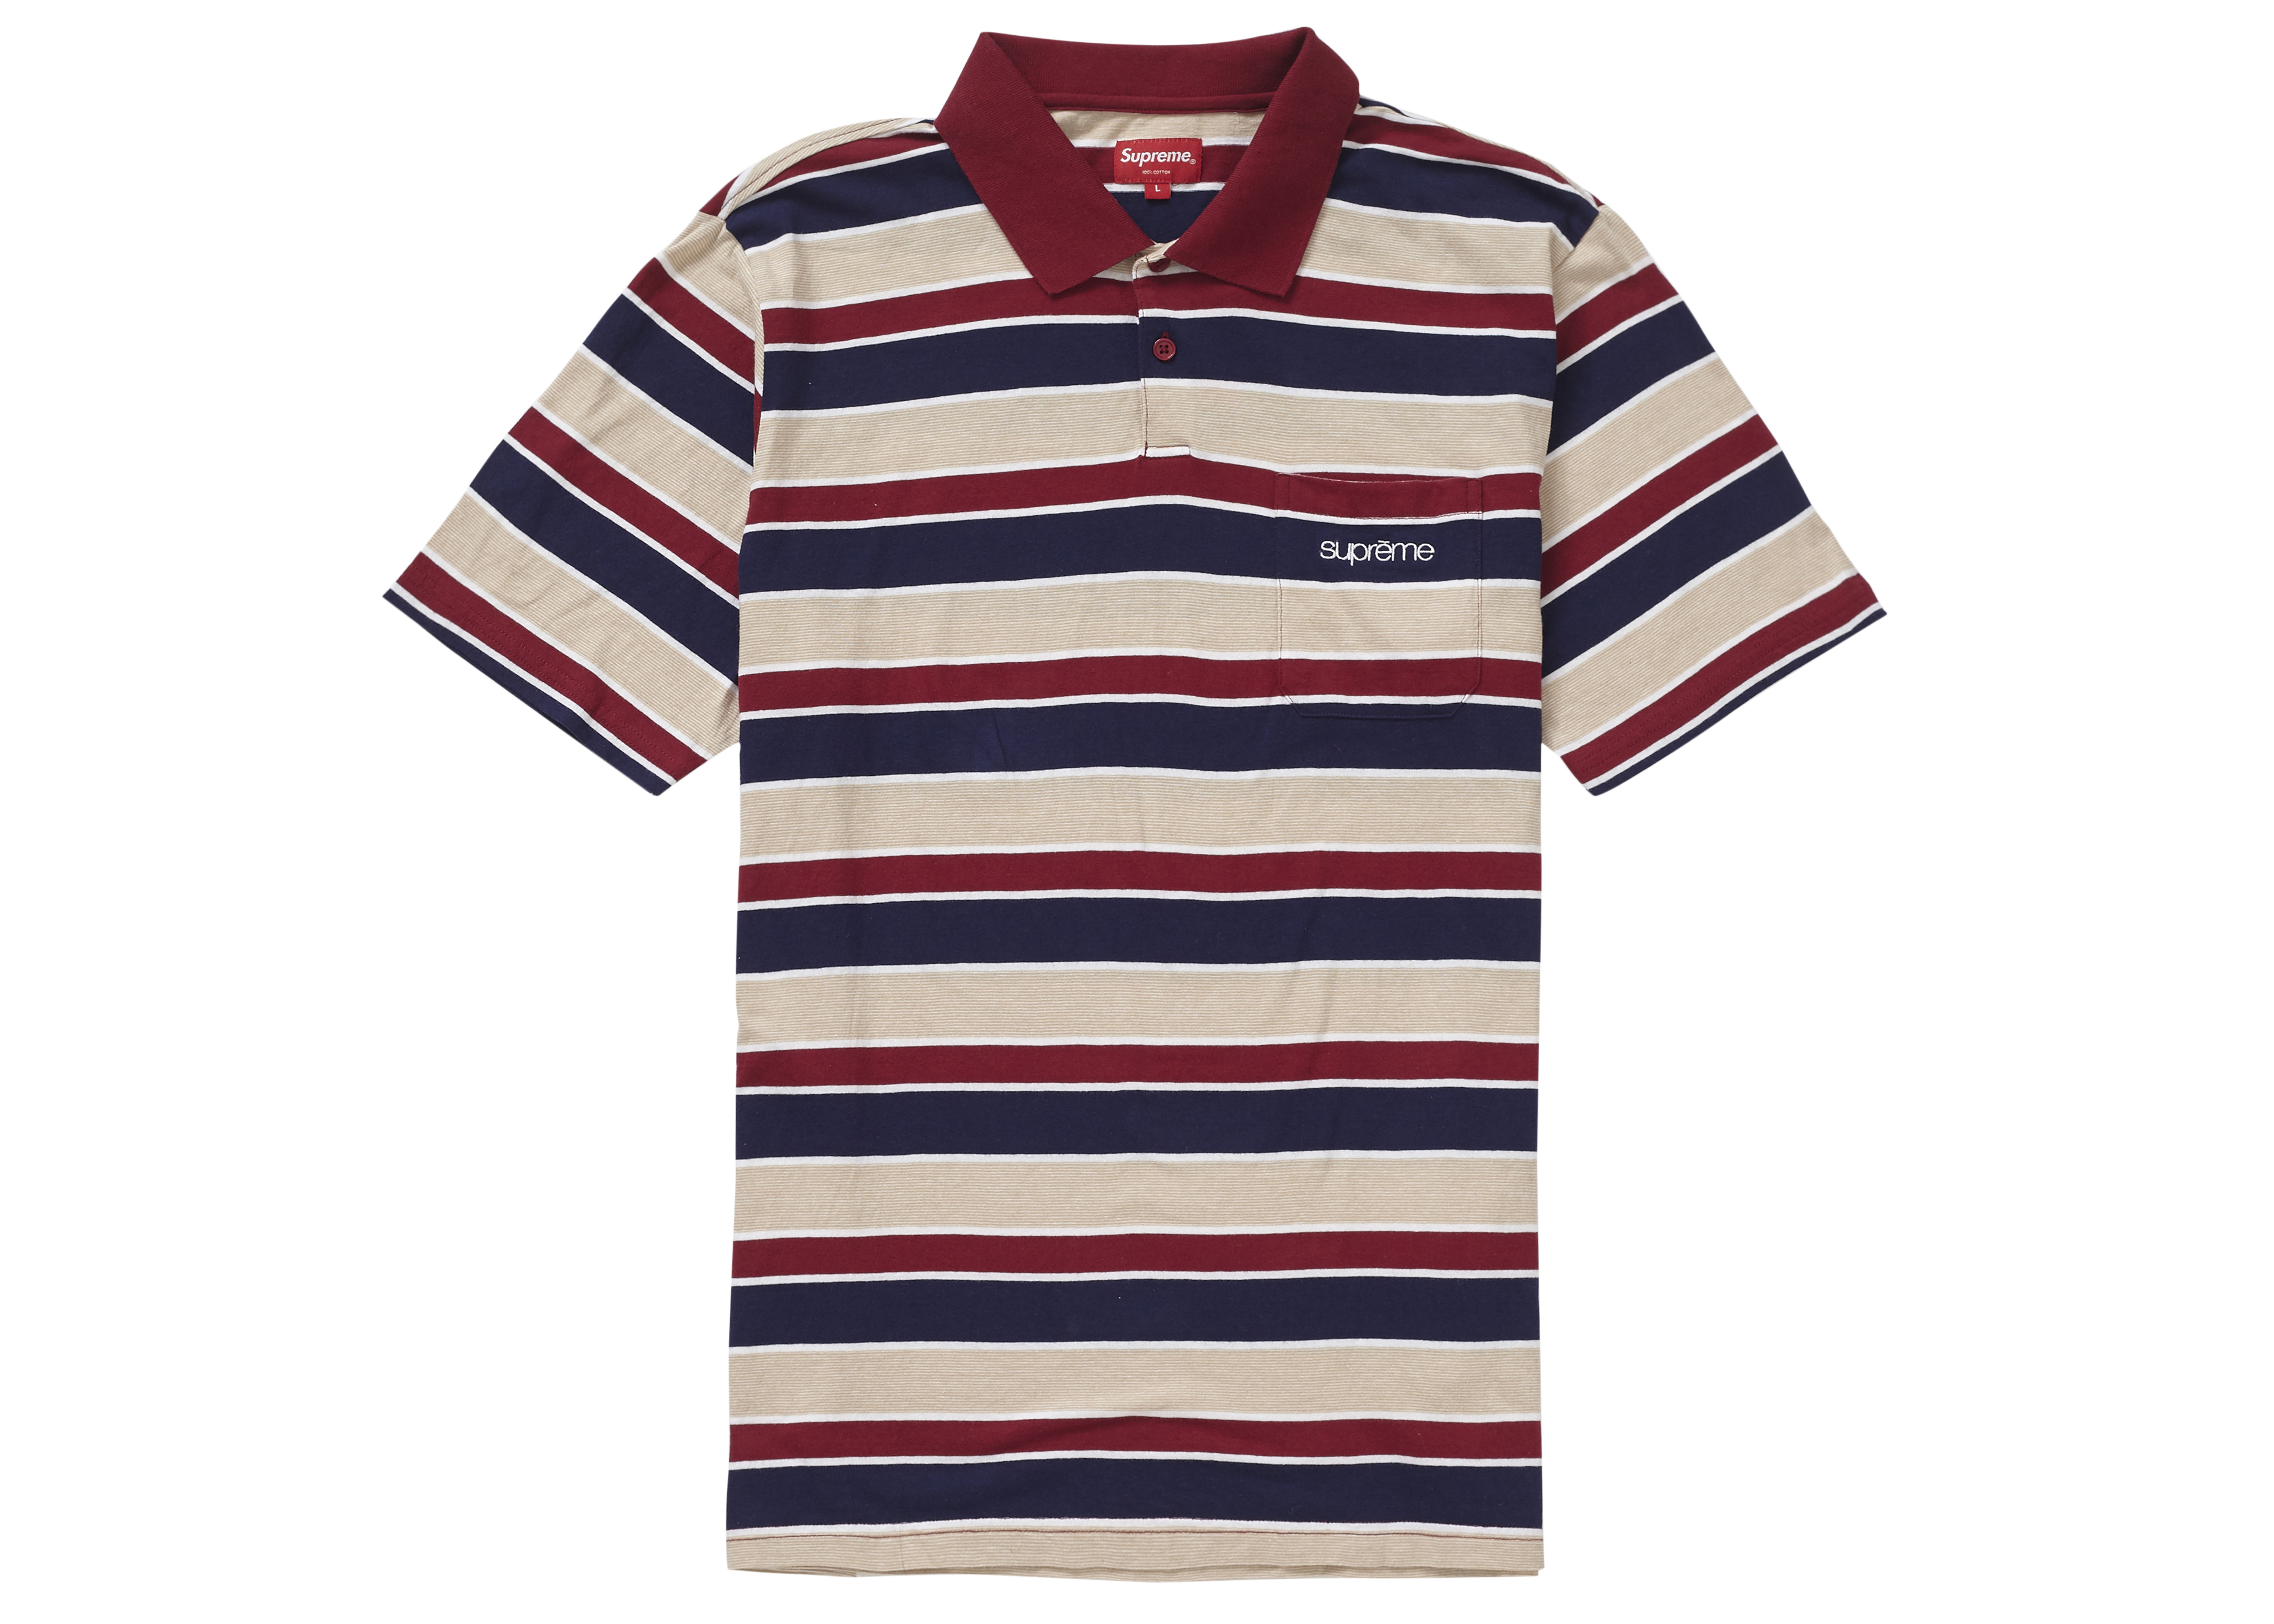 supremeSupreme Classic Stripe Polo - ポロシャツ